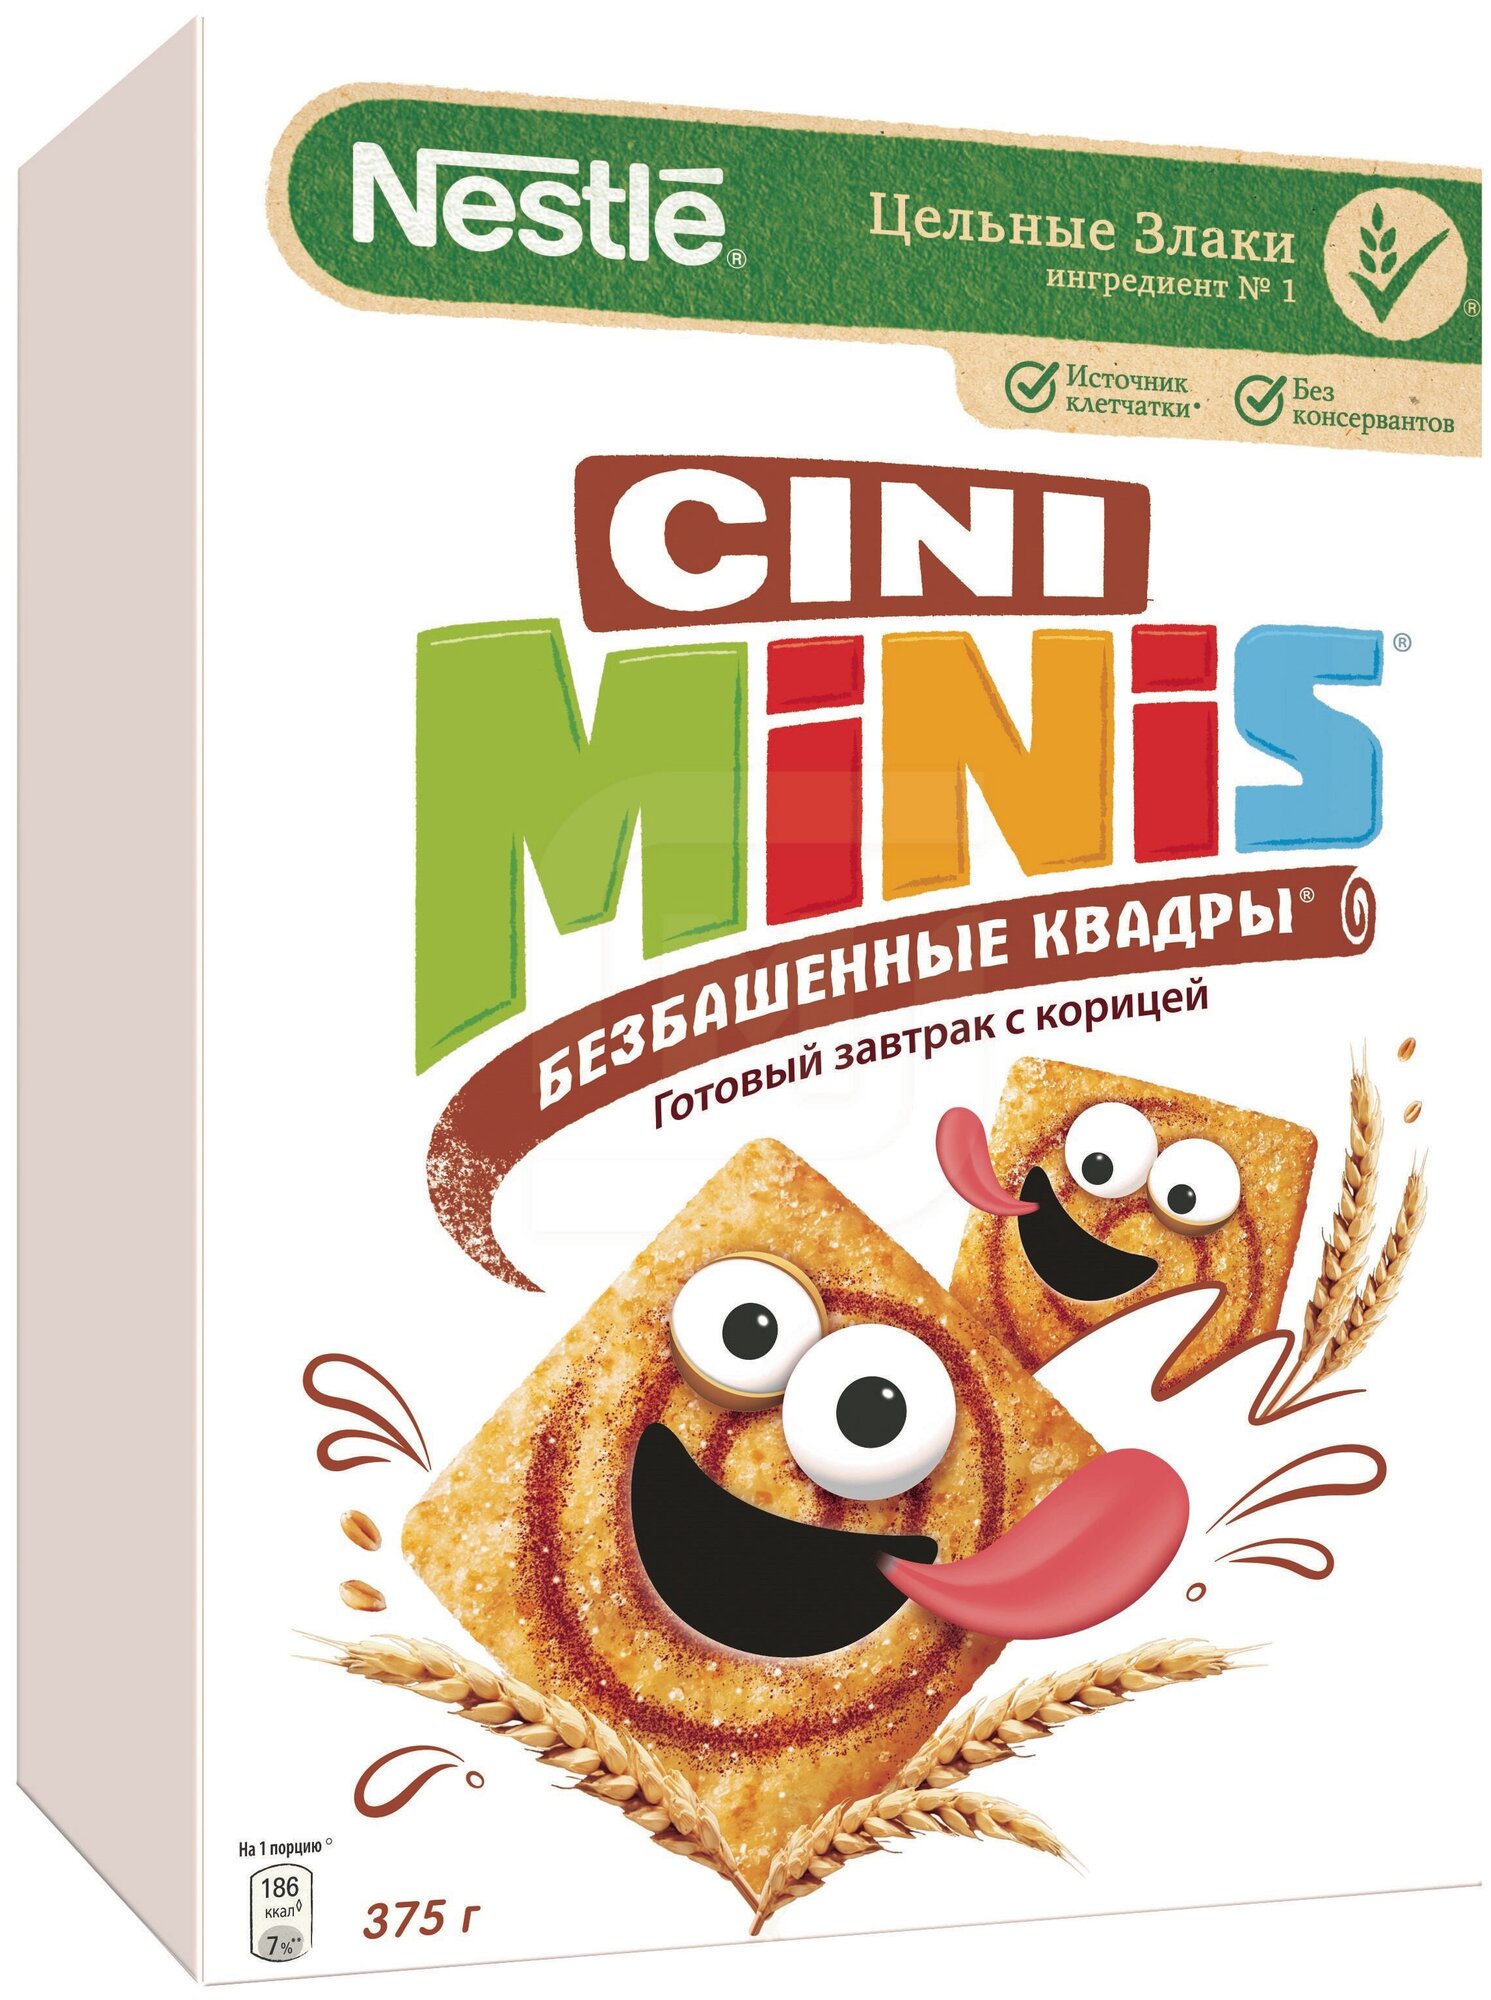 Сухой завтрак Nestle Cini Minis (Германия), 375 г - фотография № 12